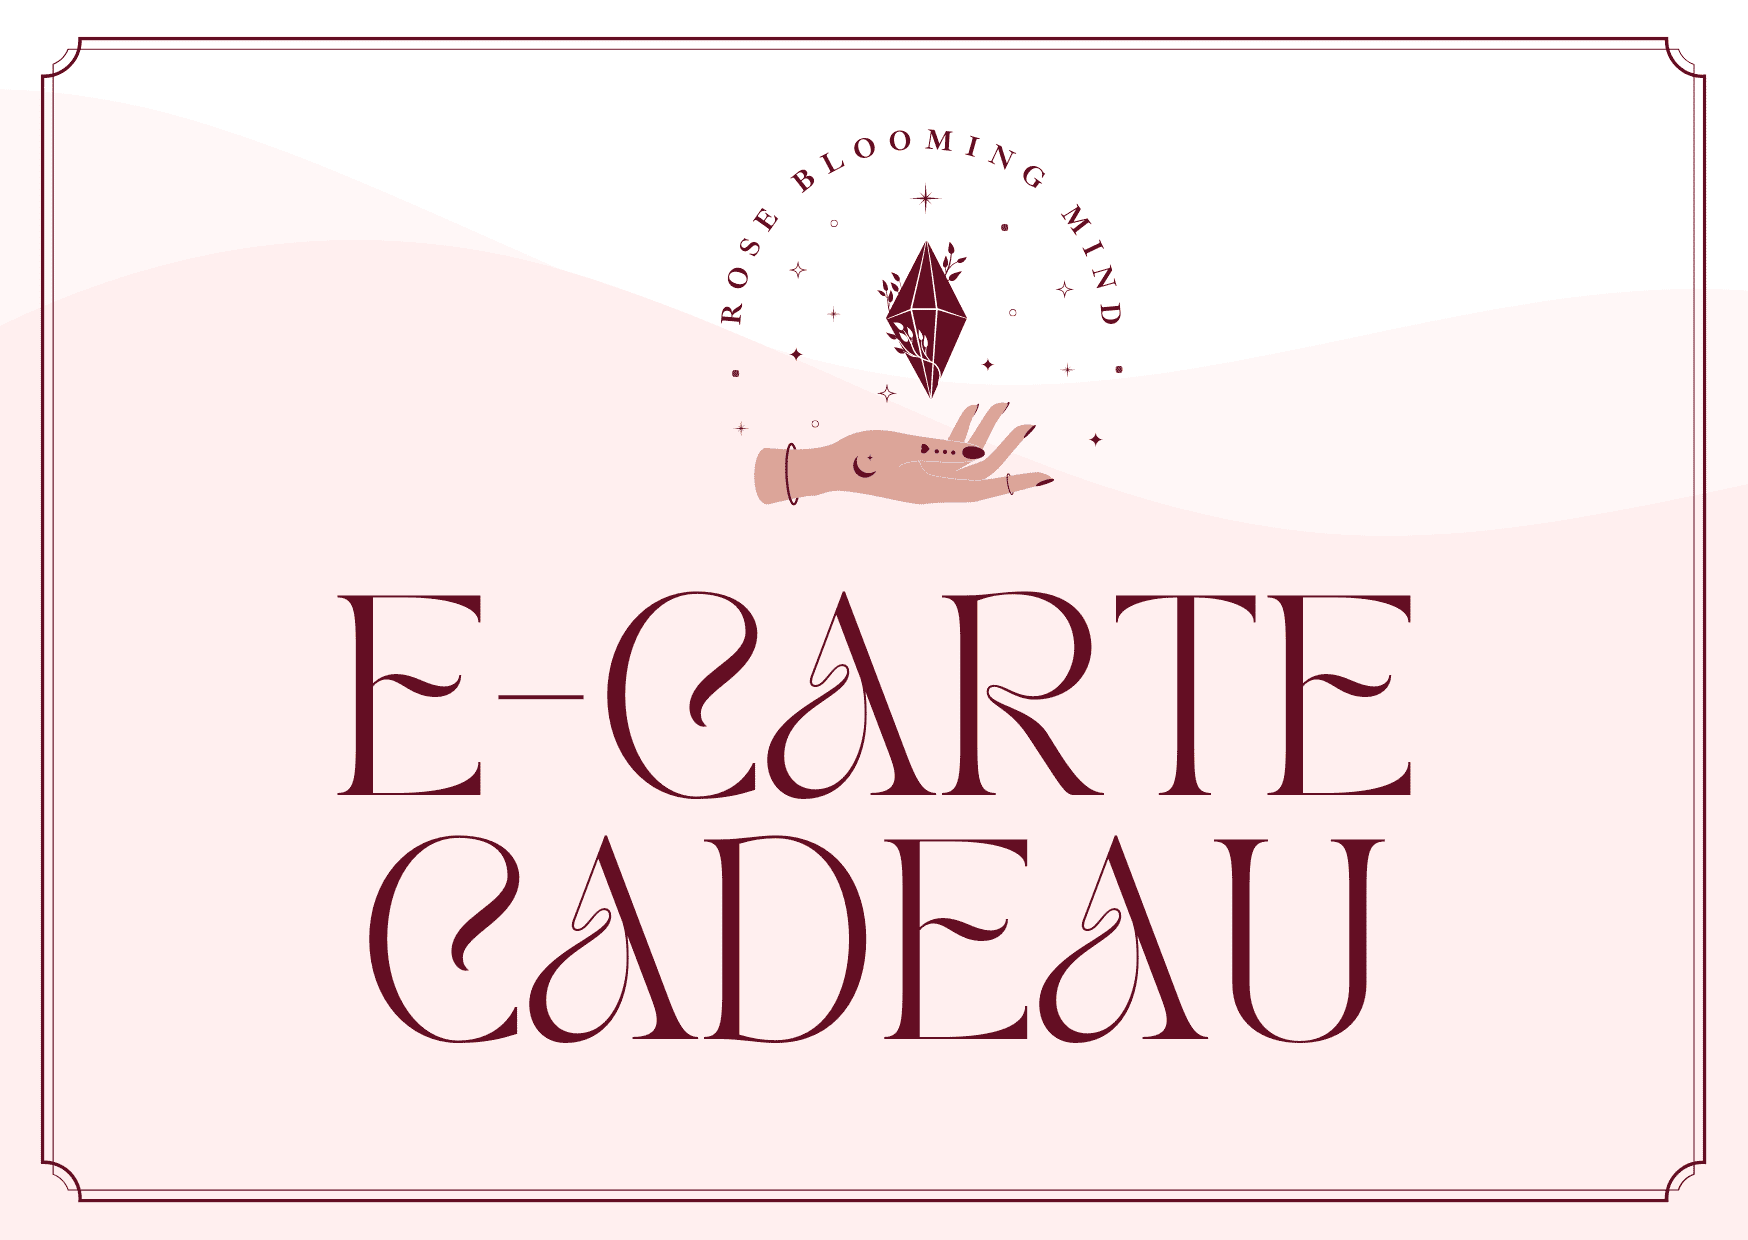 E-CARTE CARDEAU HOLISTIQUE